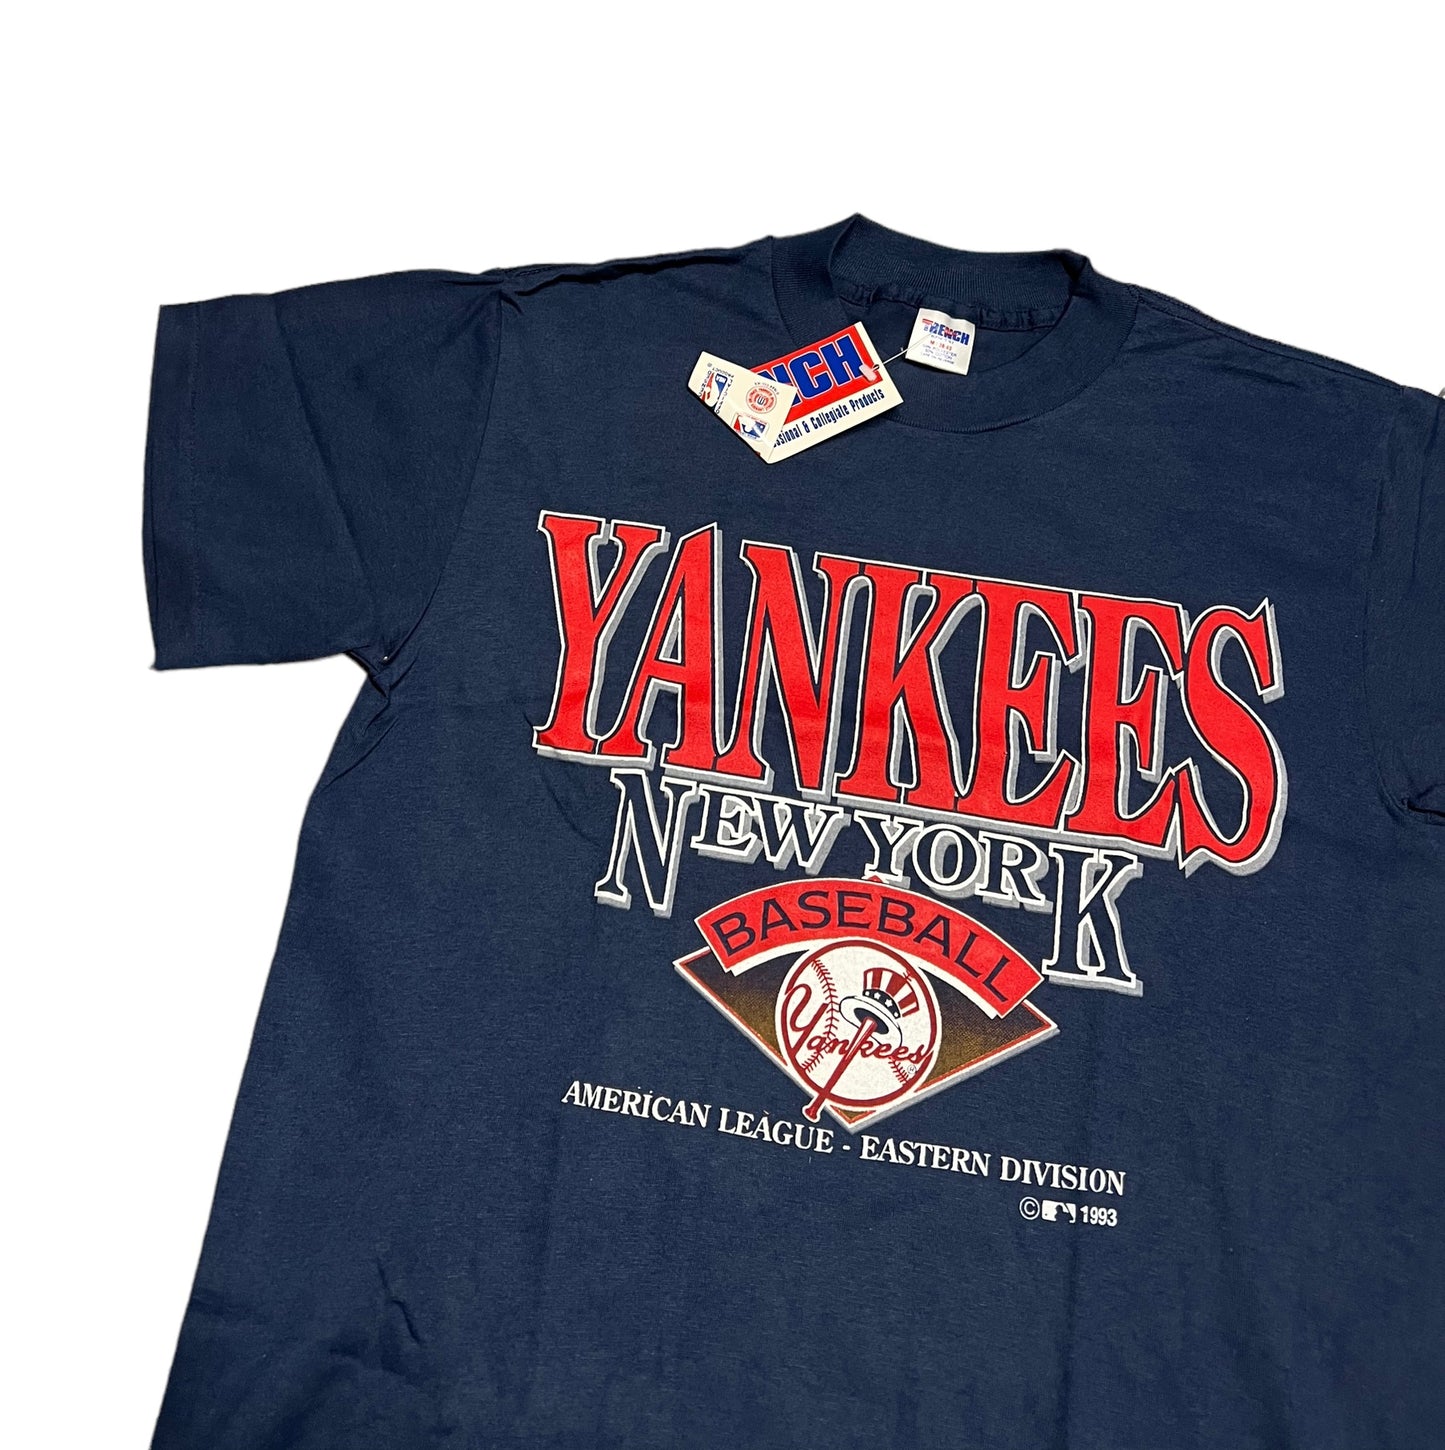 Vintage 1993 New York Yankees Shirt NOS